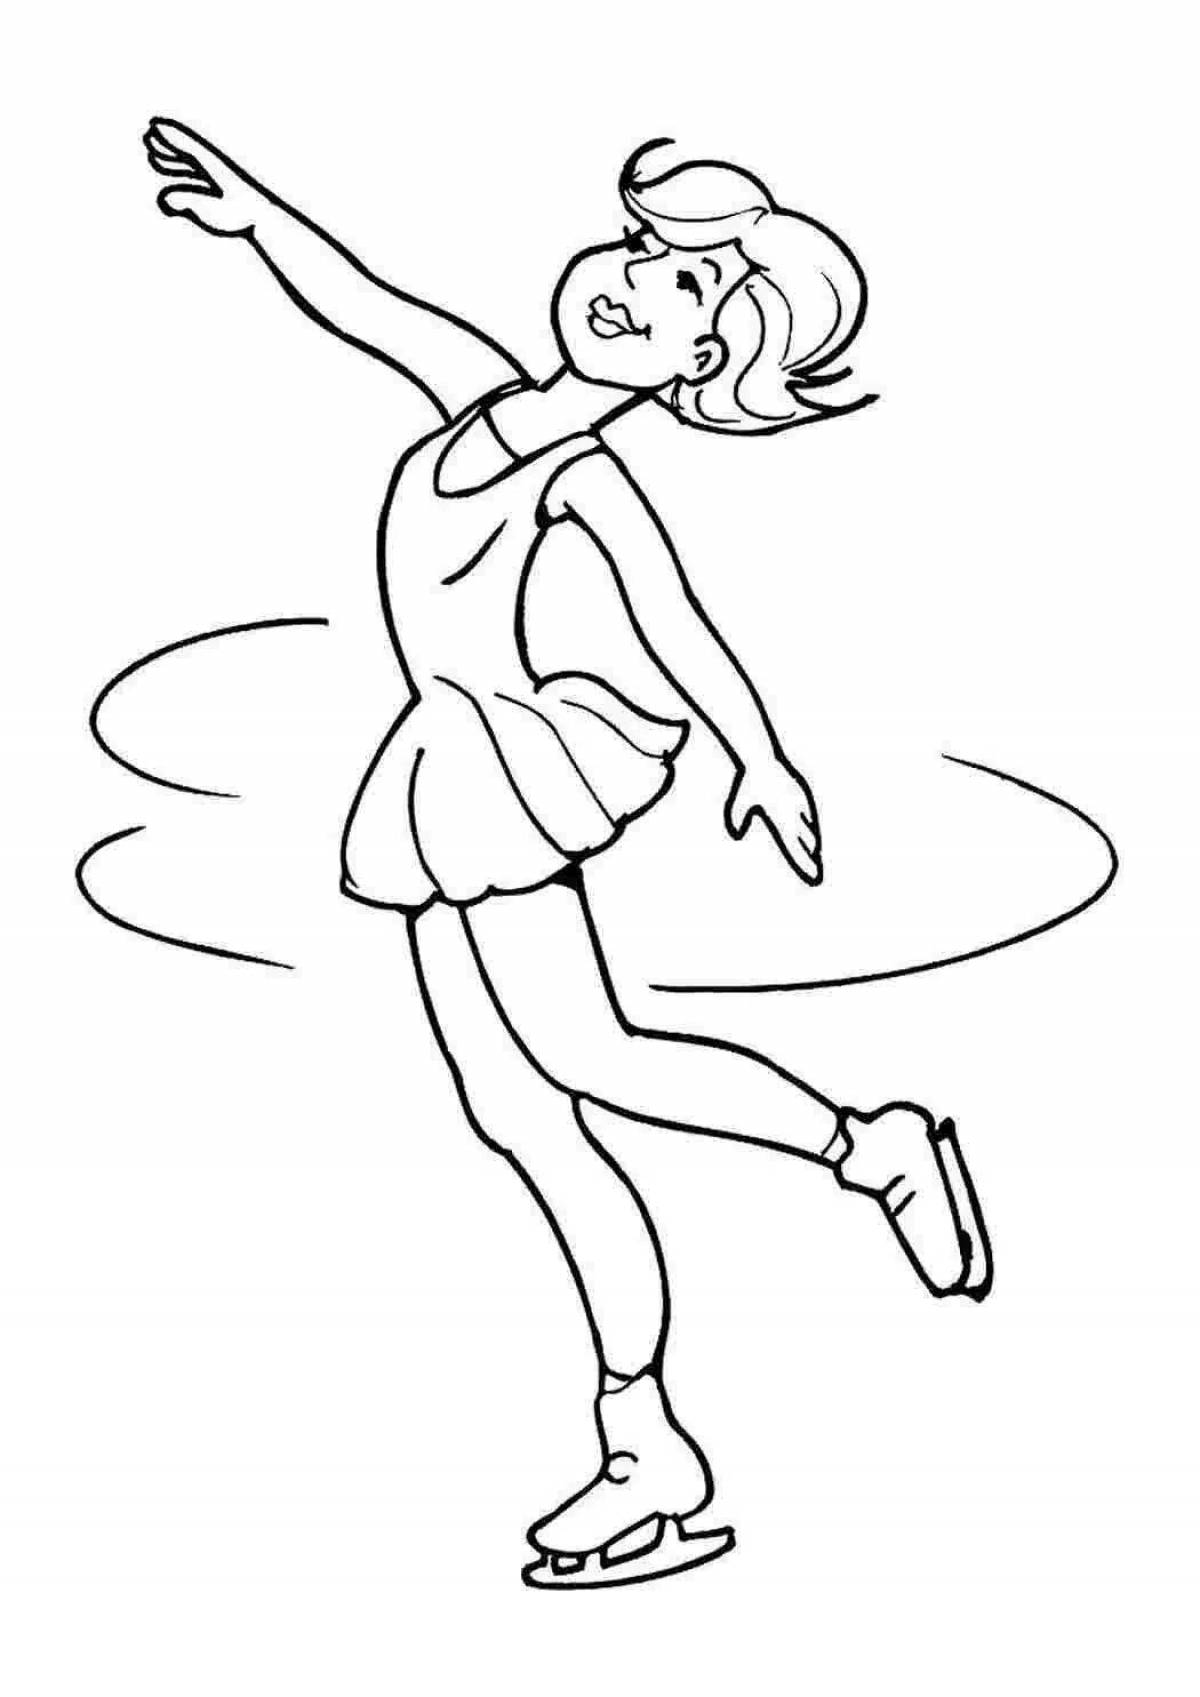 Blissful coloring figure skater girl